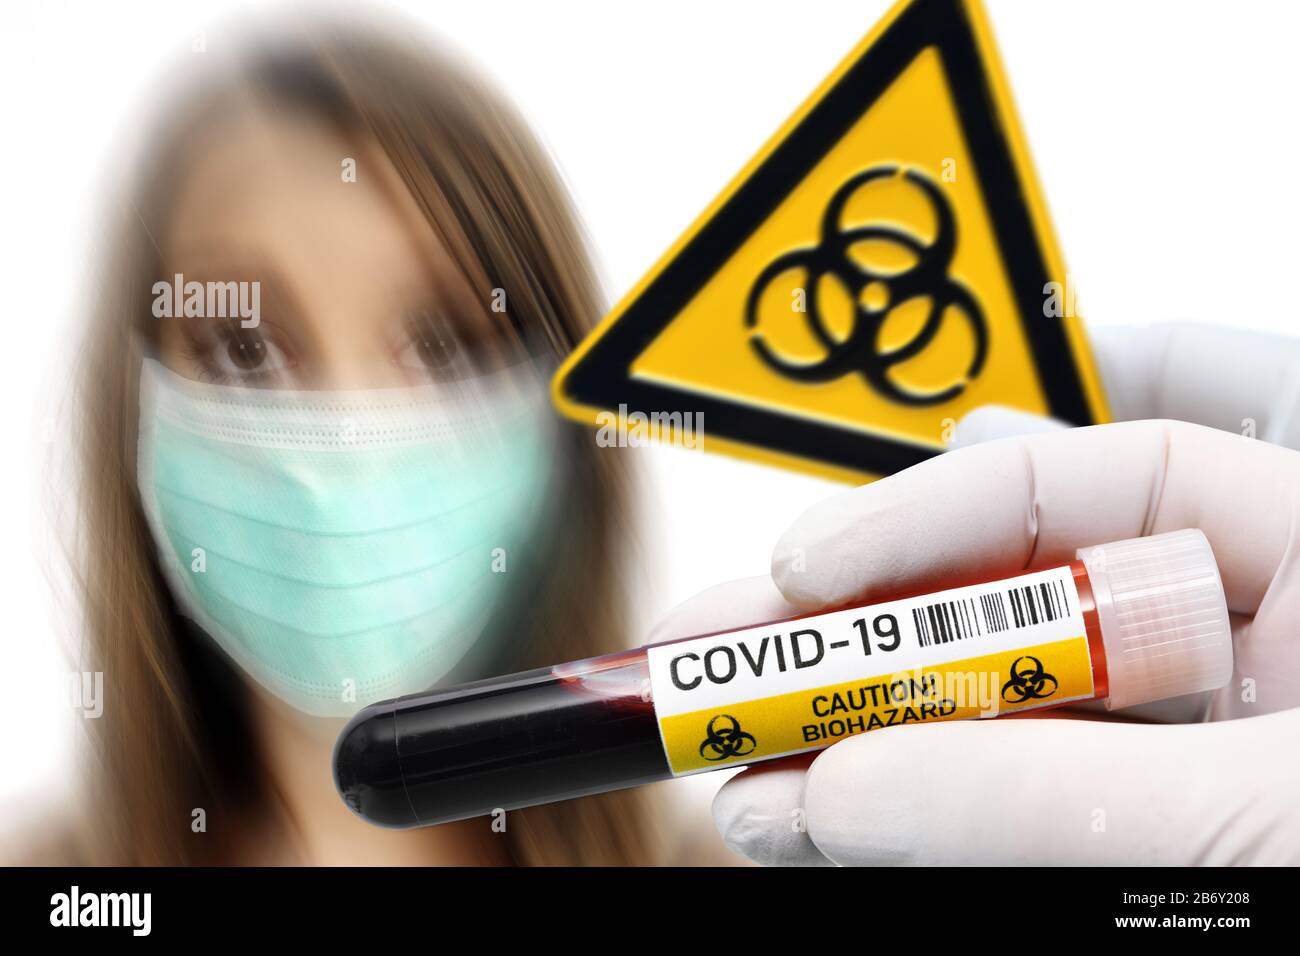 OktoMONTAGE, Haende Halten Blutentnahmeroehrchen und Biogefaehrdungsschild vor Frau mit Atemschutzmaske, Symbolfoto Coronavirus Foto Stock